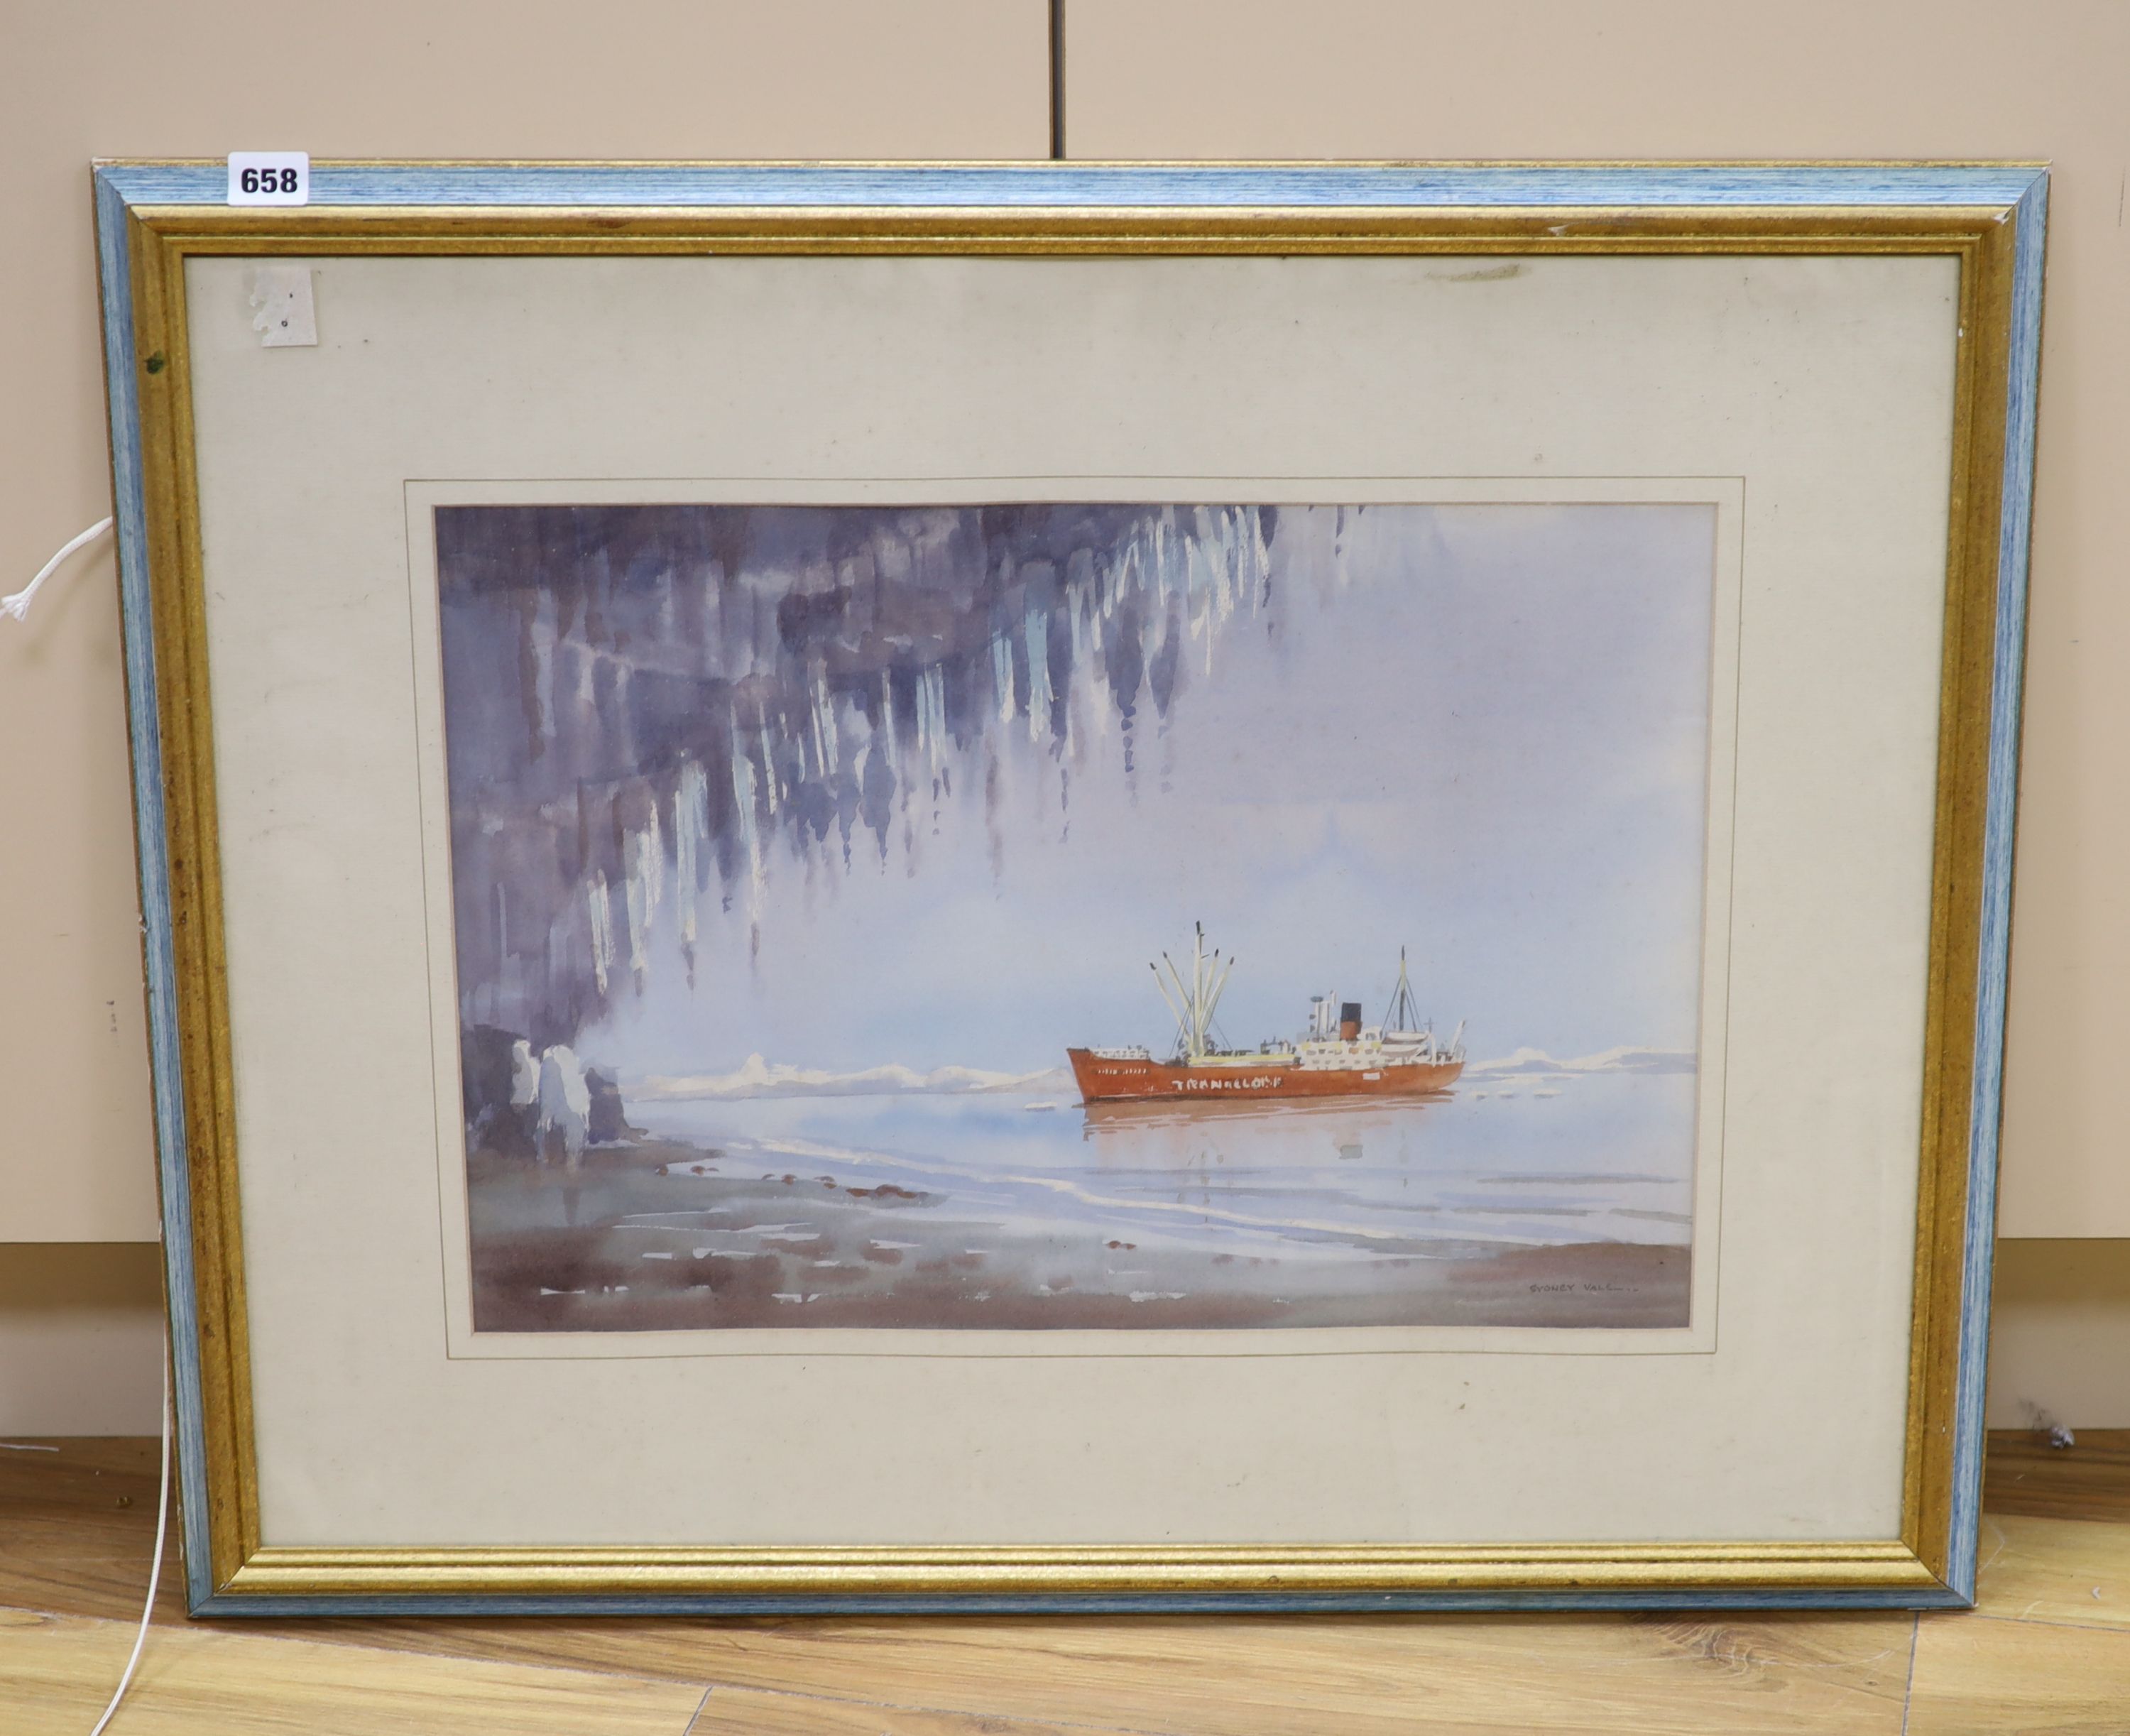 Sydney Vale (1916-1991), watercolour, Antarctic Exploration Ship, 35 x 51cm